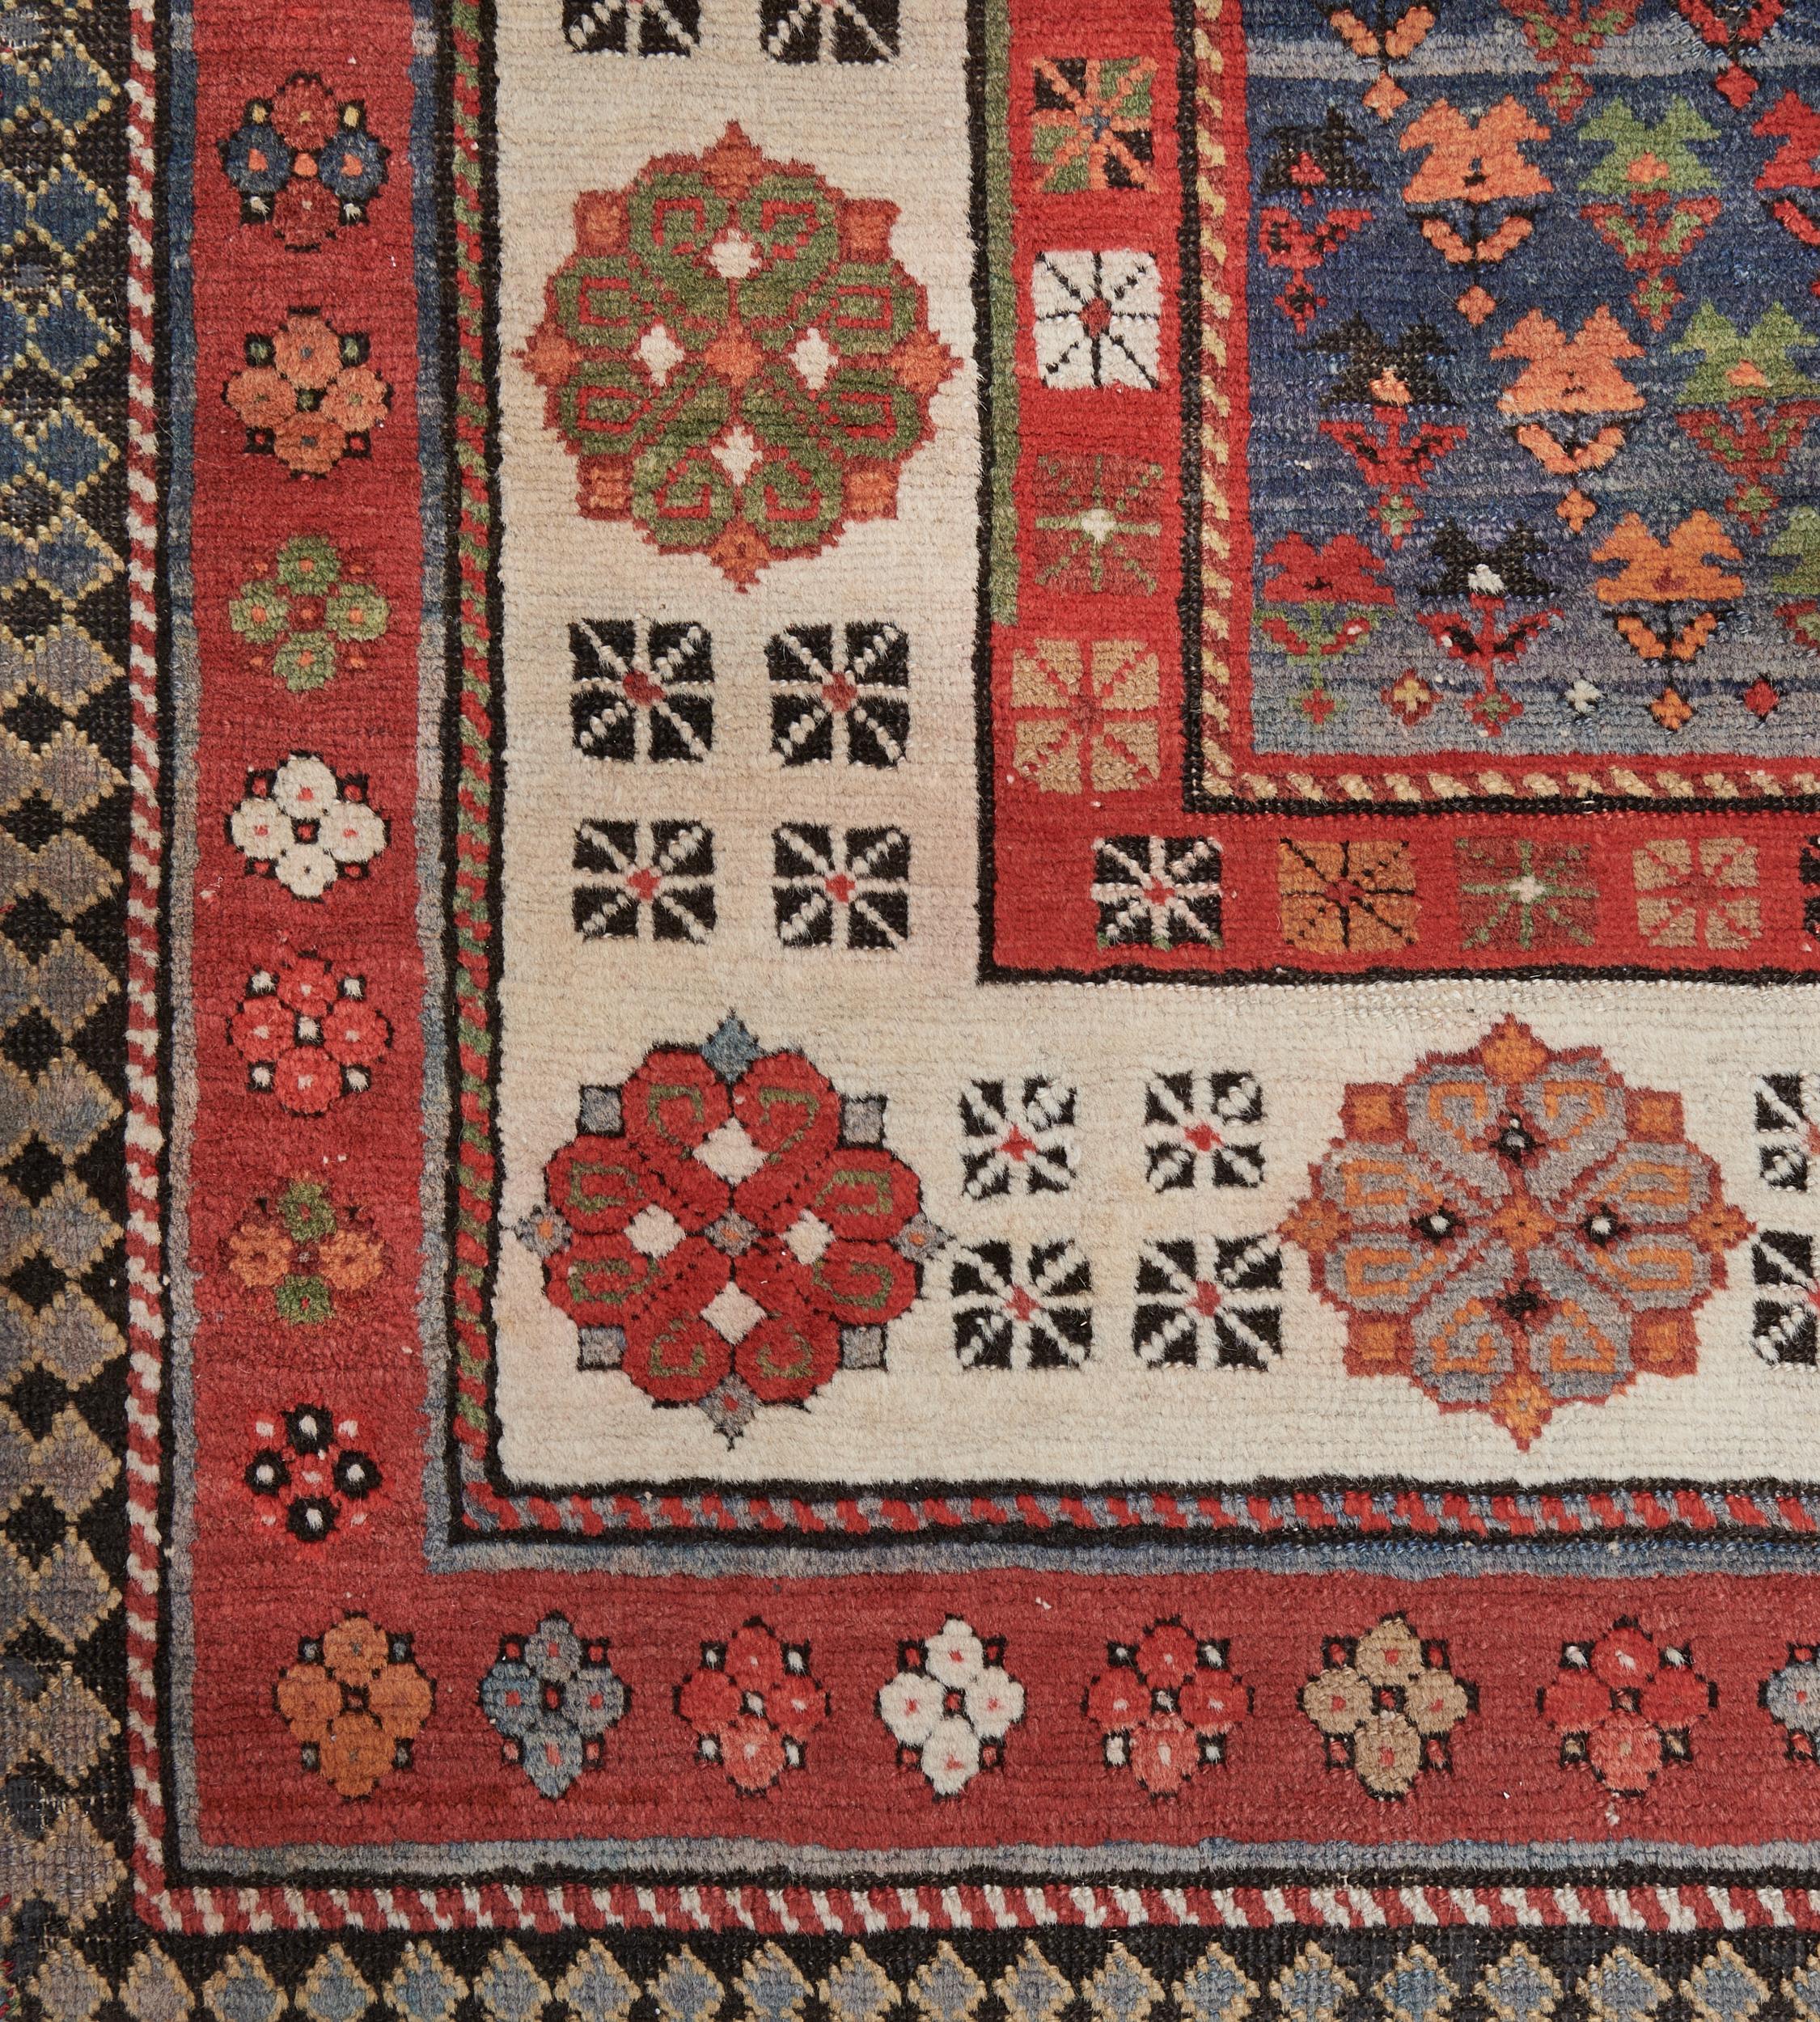 Dieser traditionelle, handgewebte kaukasische Talysh-Teppich hat ein schattiertes, tiefblaues Feld mit abwechselnd polychromen, diagonalen, geometrischen Blumenmotiven in einer elfenbeinfarbenen Rosettenbordüre zwischen polychromen